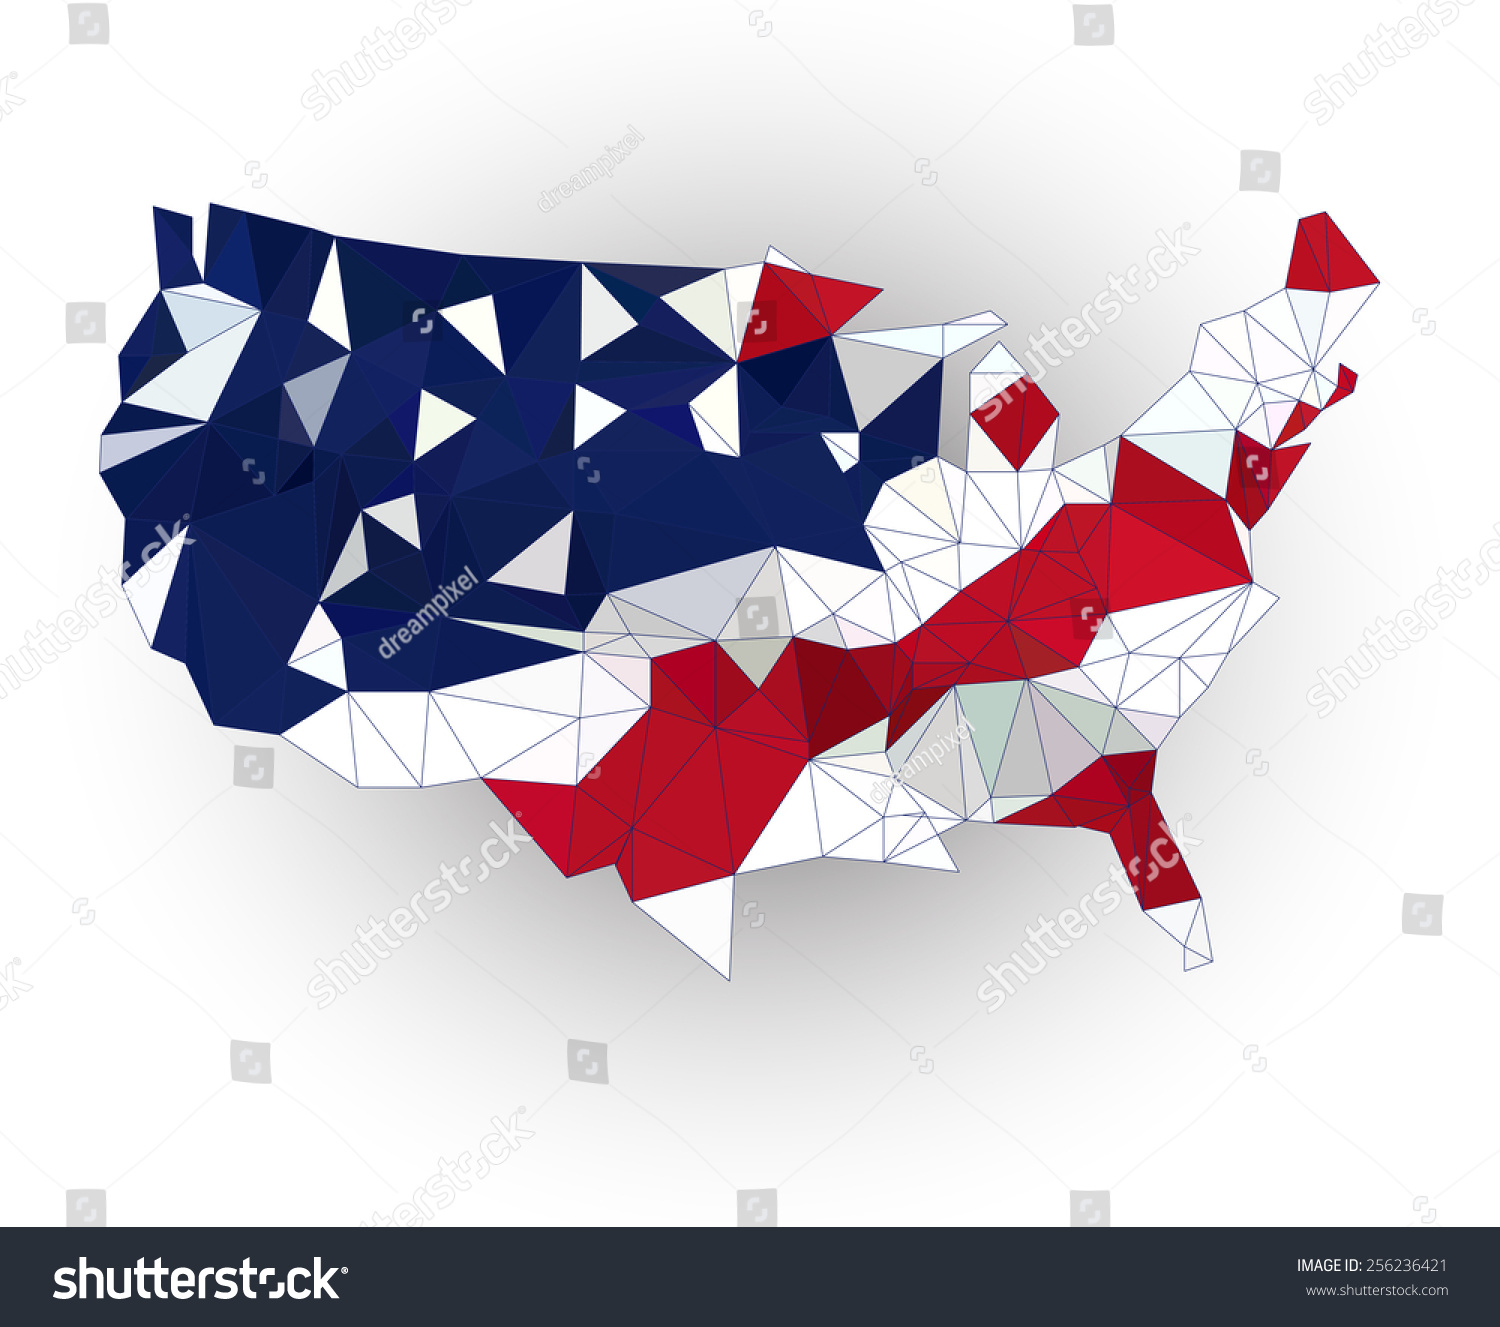 低聚美国地图上挥舞着国旗-符号/标志,抽象-海洛创意图片